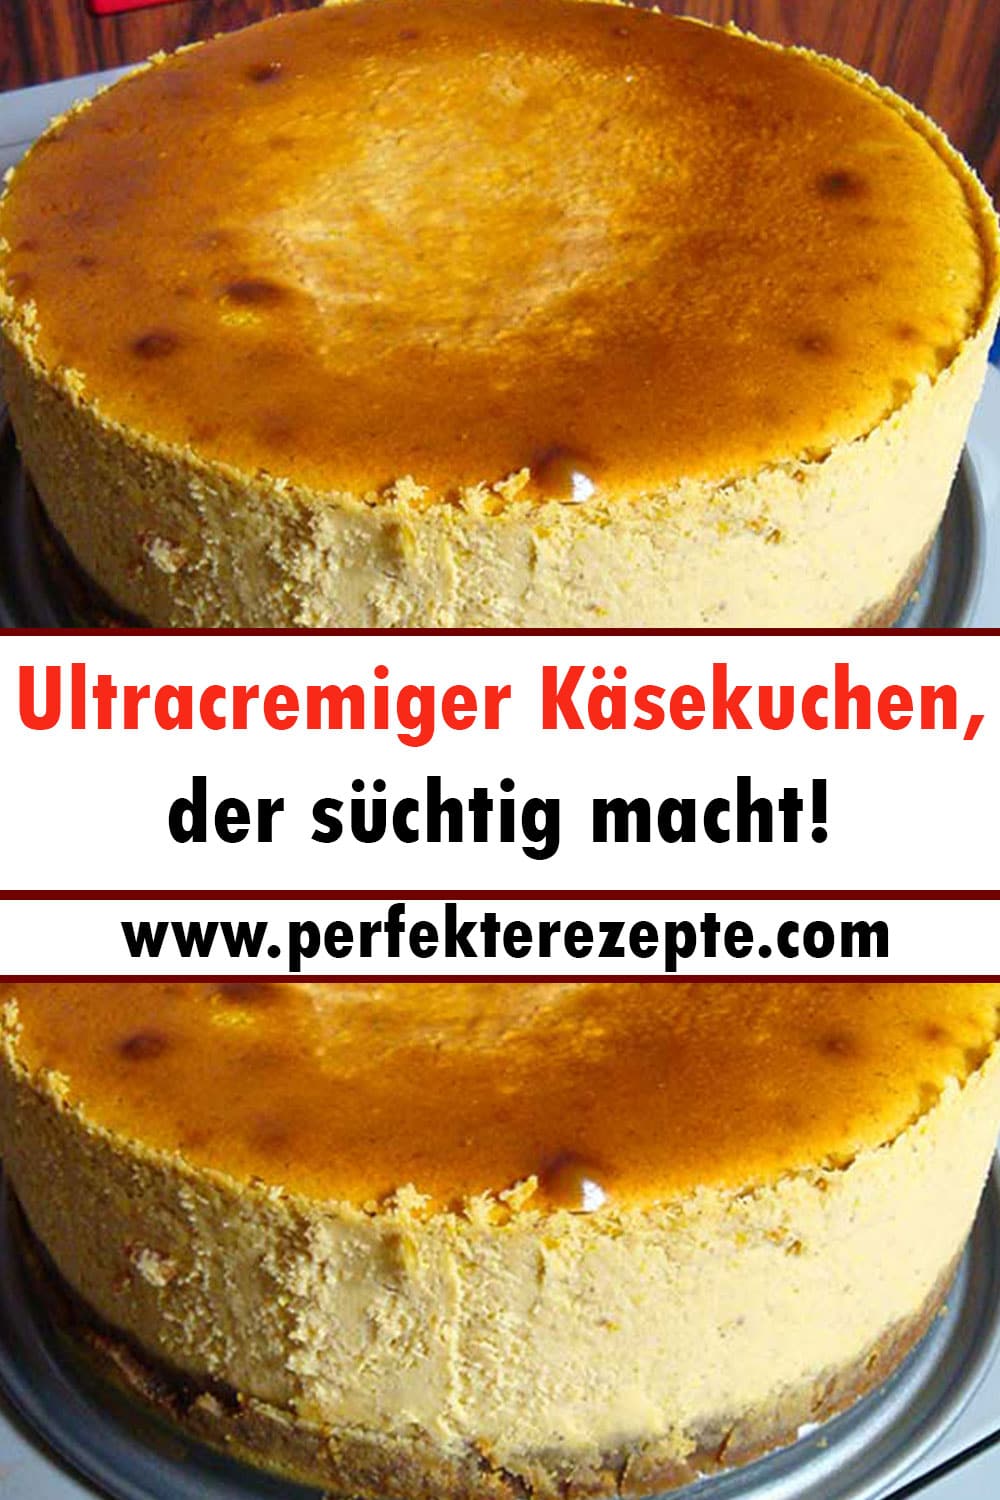 Ultracremiger Käsekuchen Rezept, der süchtig macht!